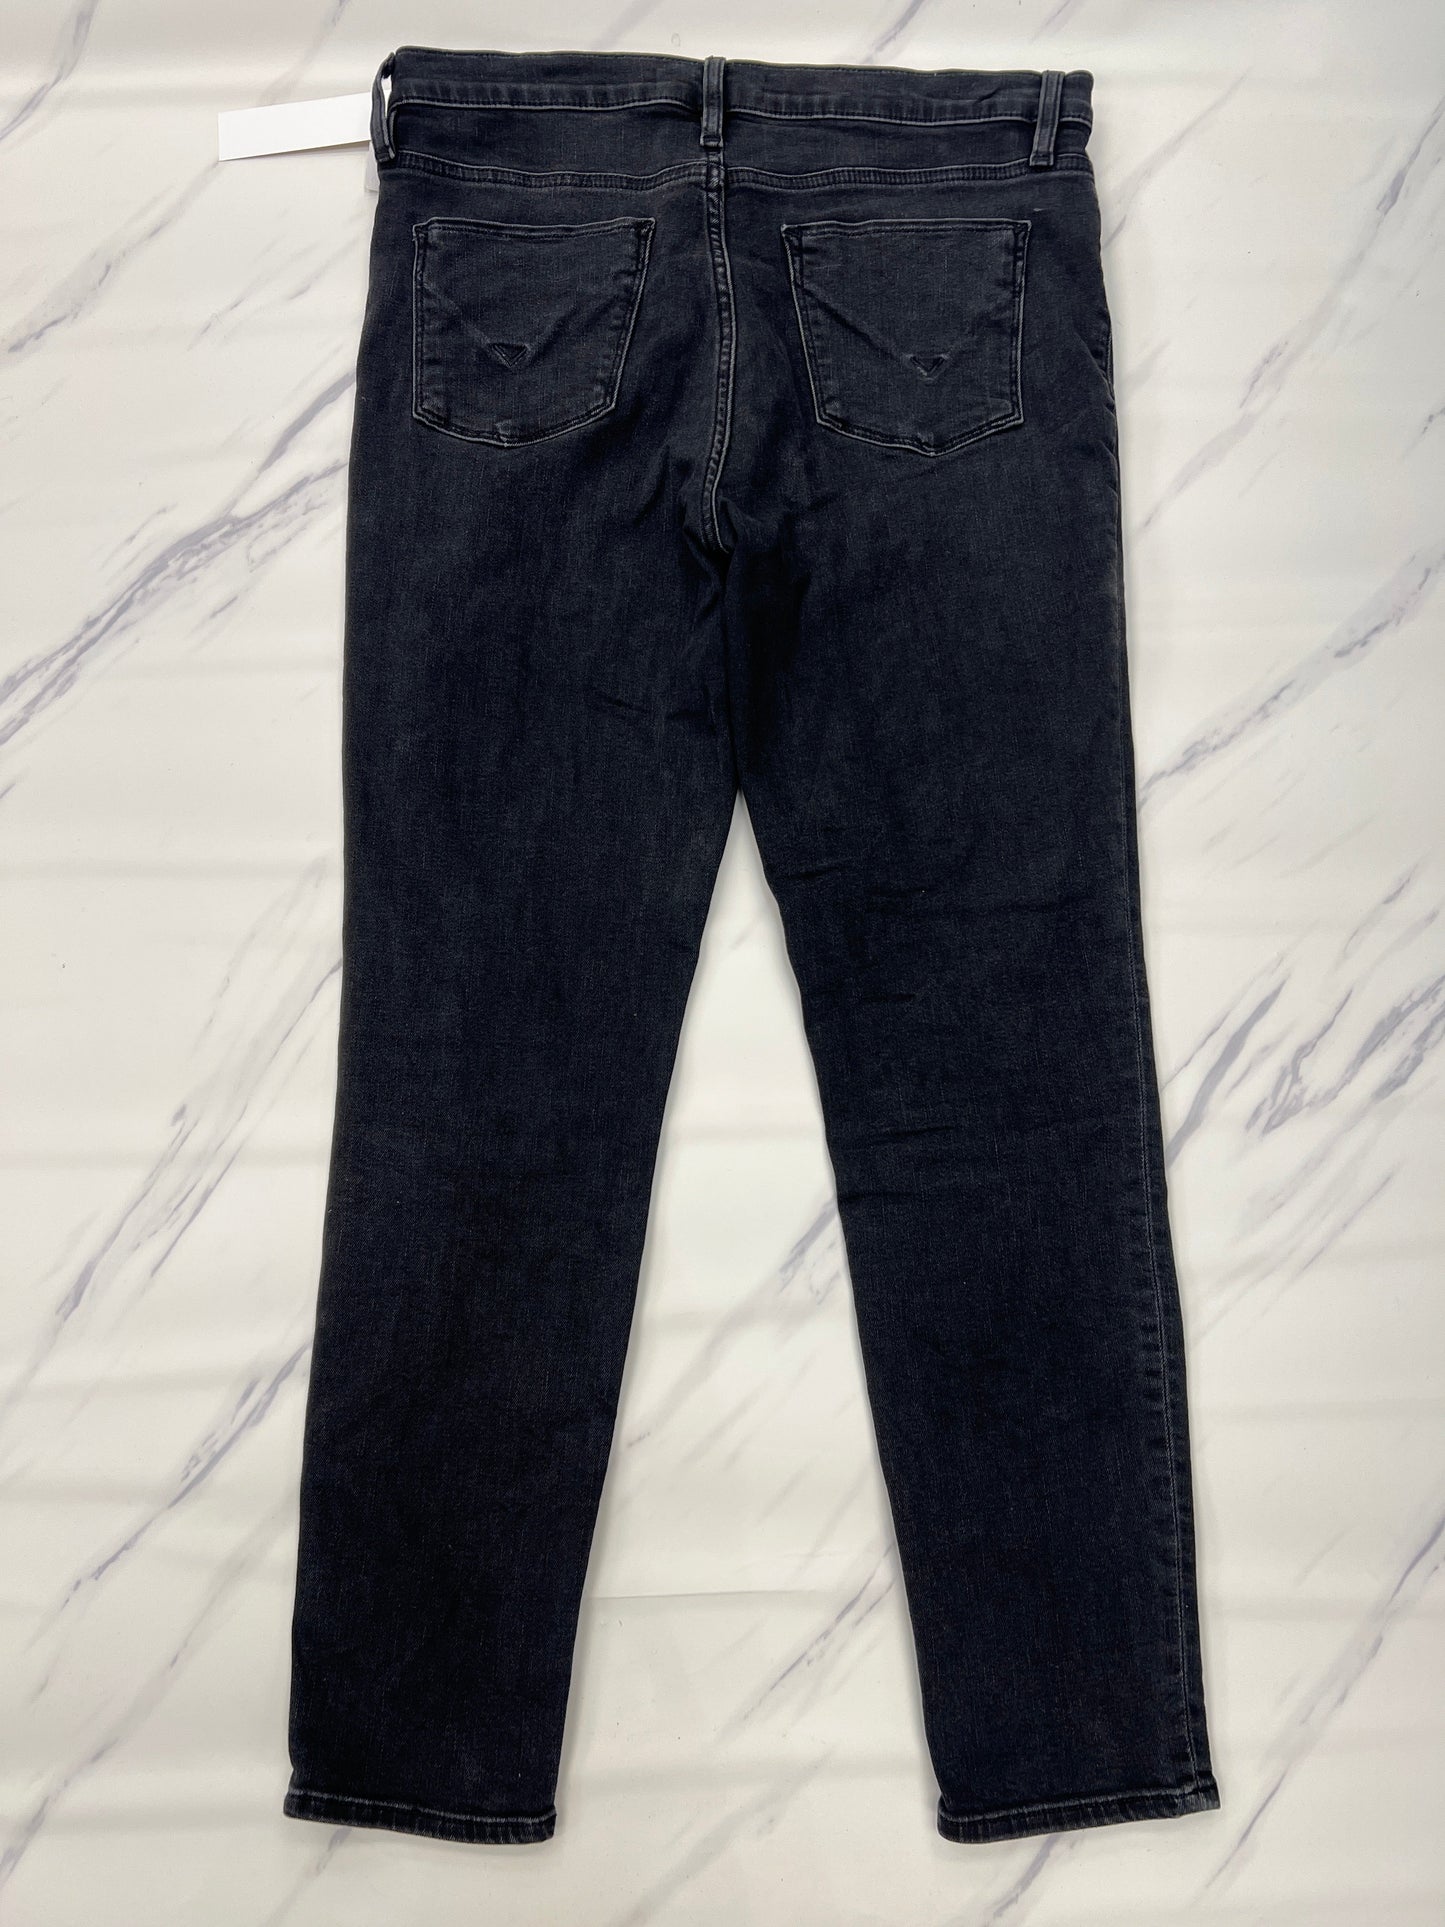 Black Jeans Designer Hudson, Size 8